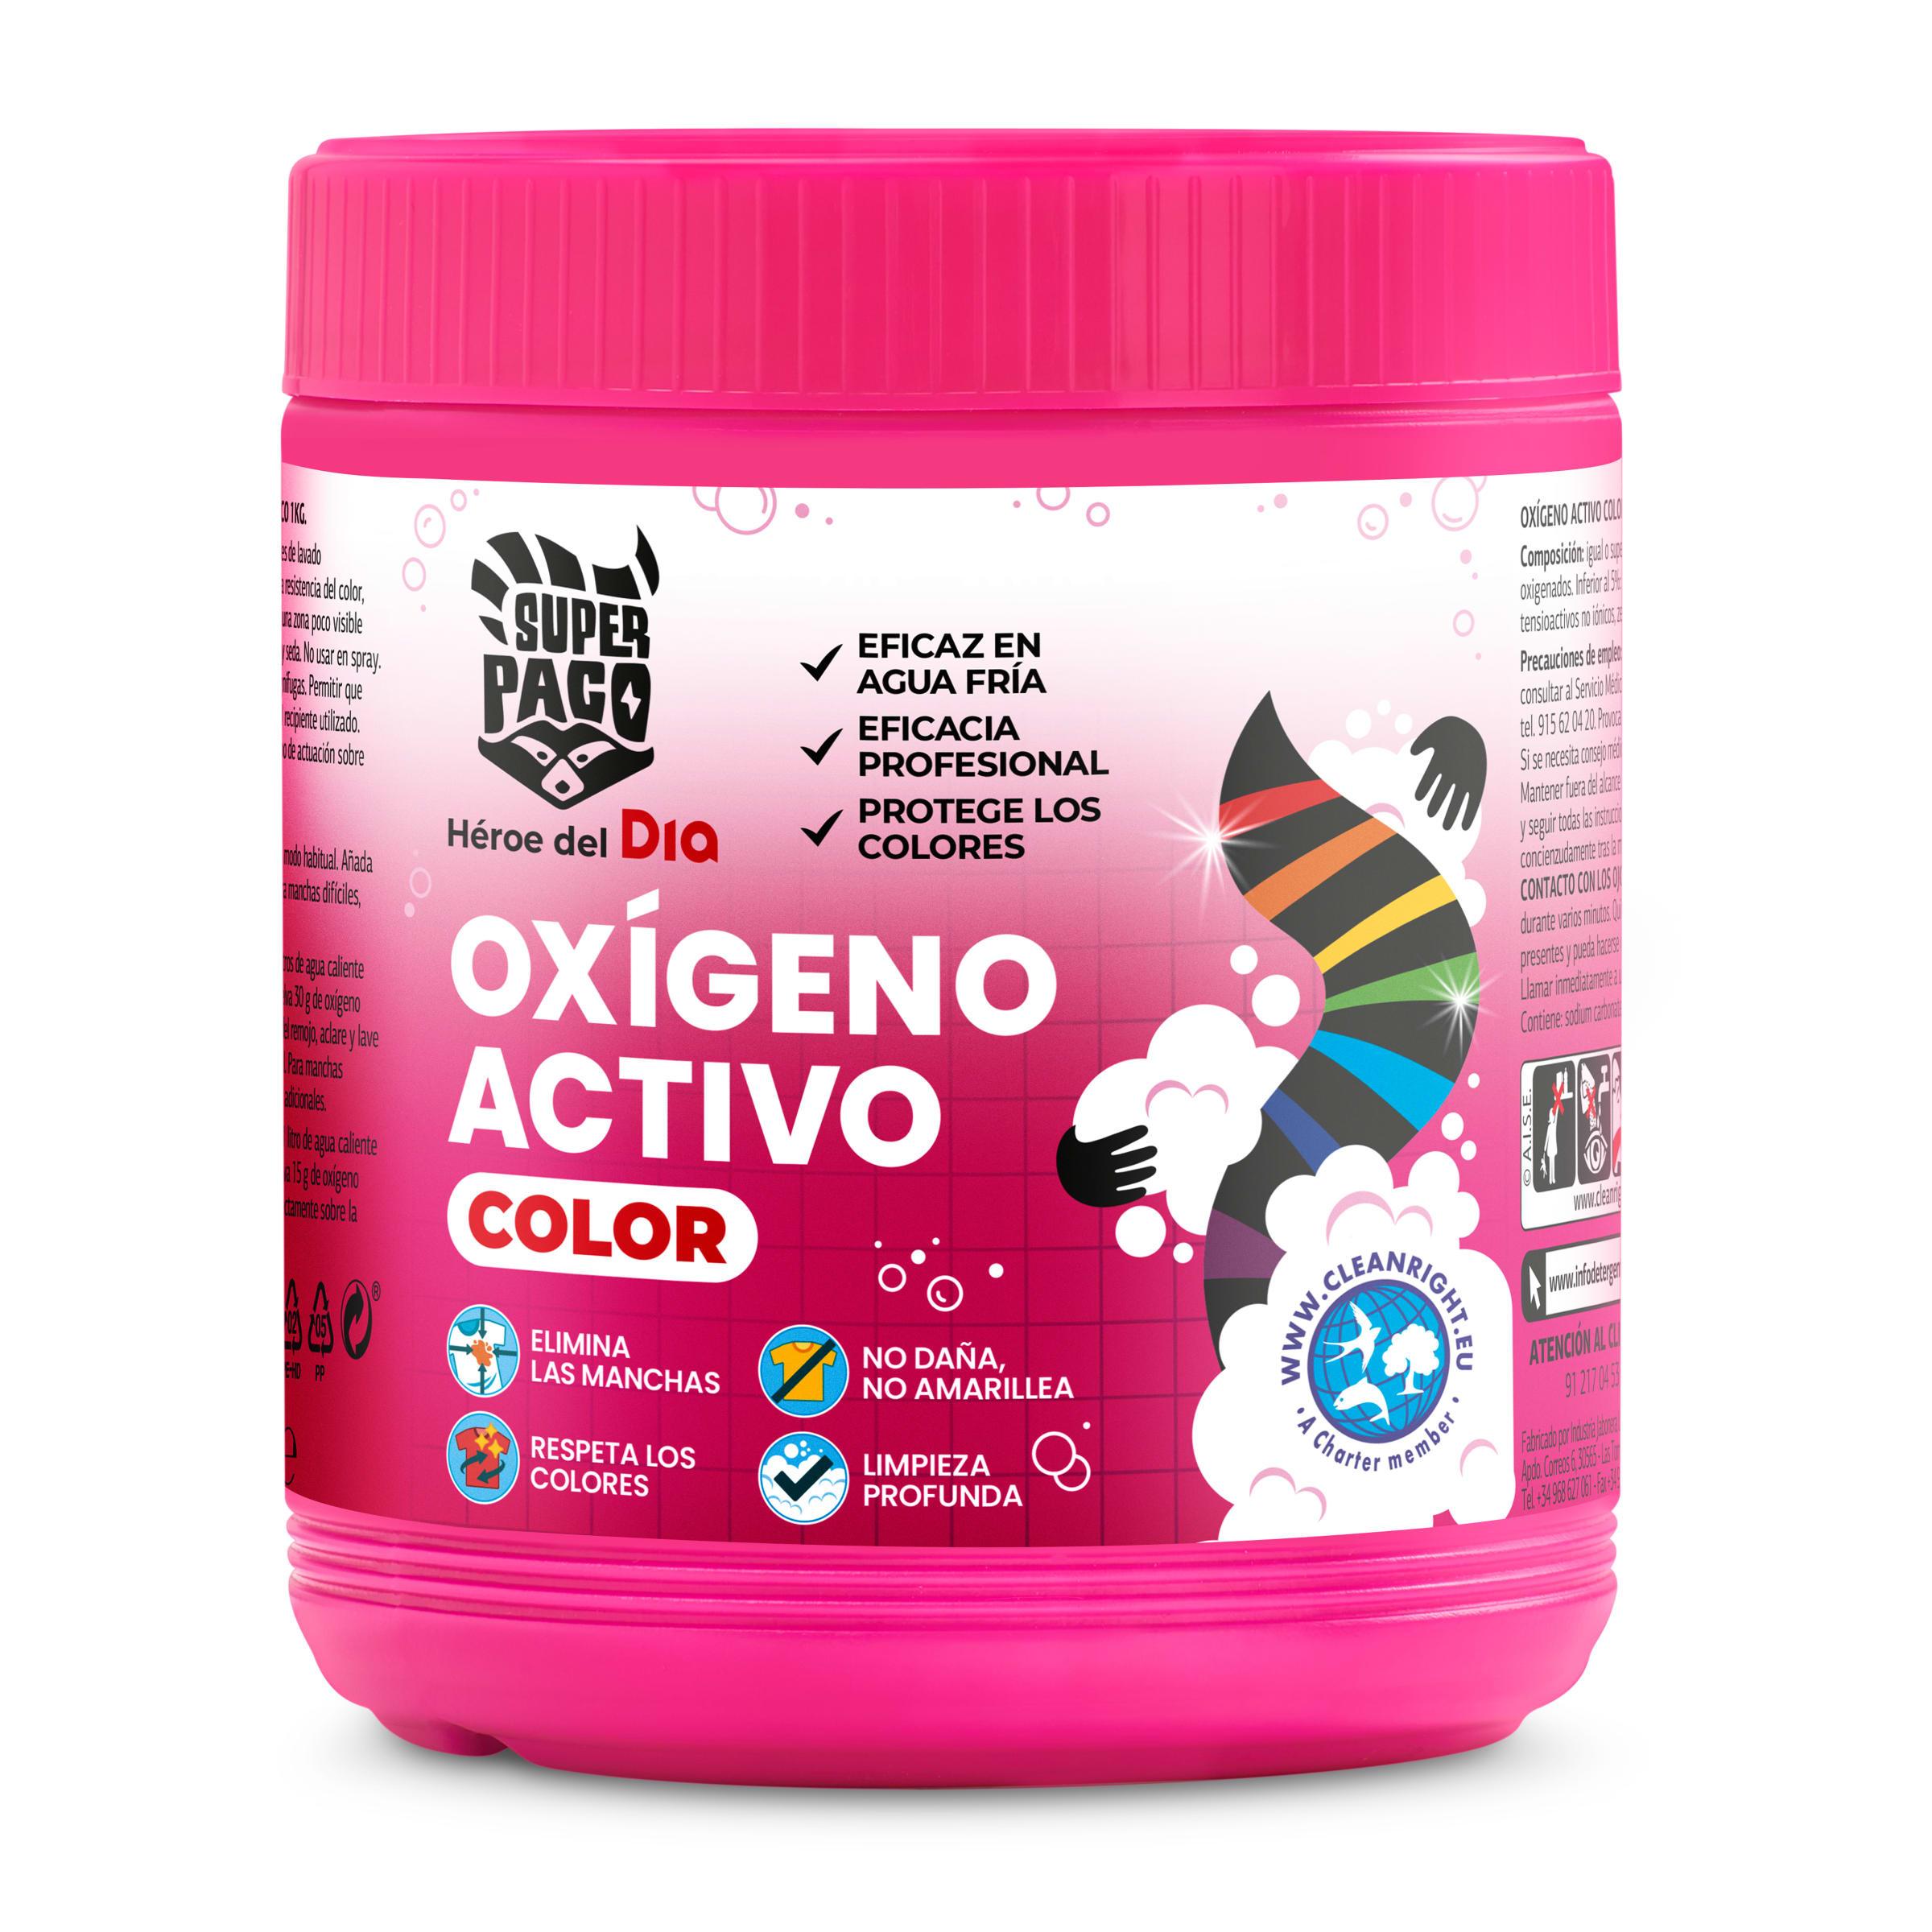 Oxígeno activo color Super Paco frasco 1 Kg - Supermercados DIA